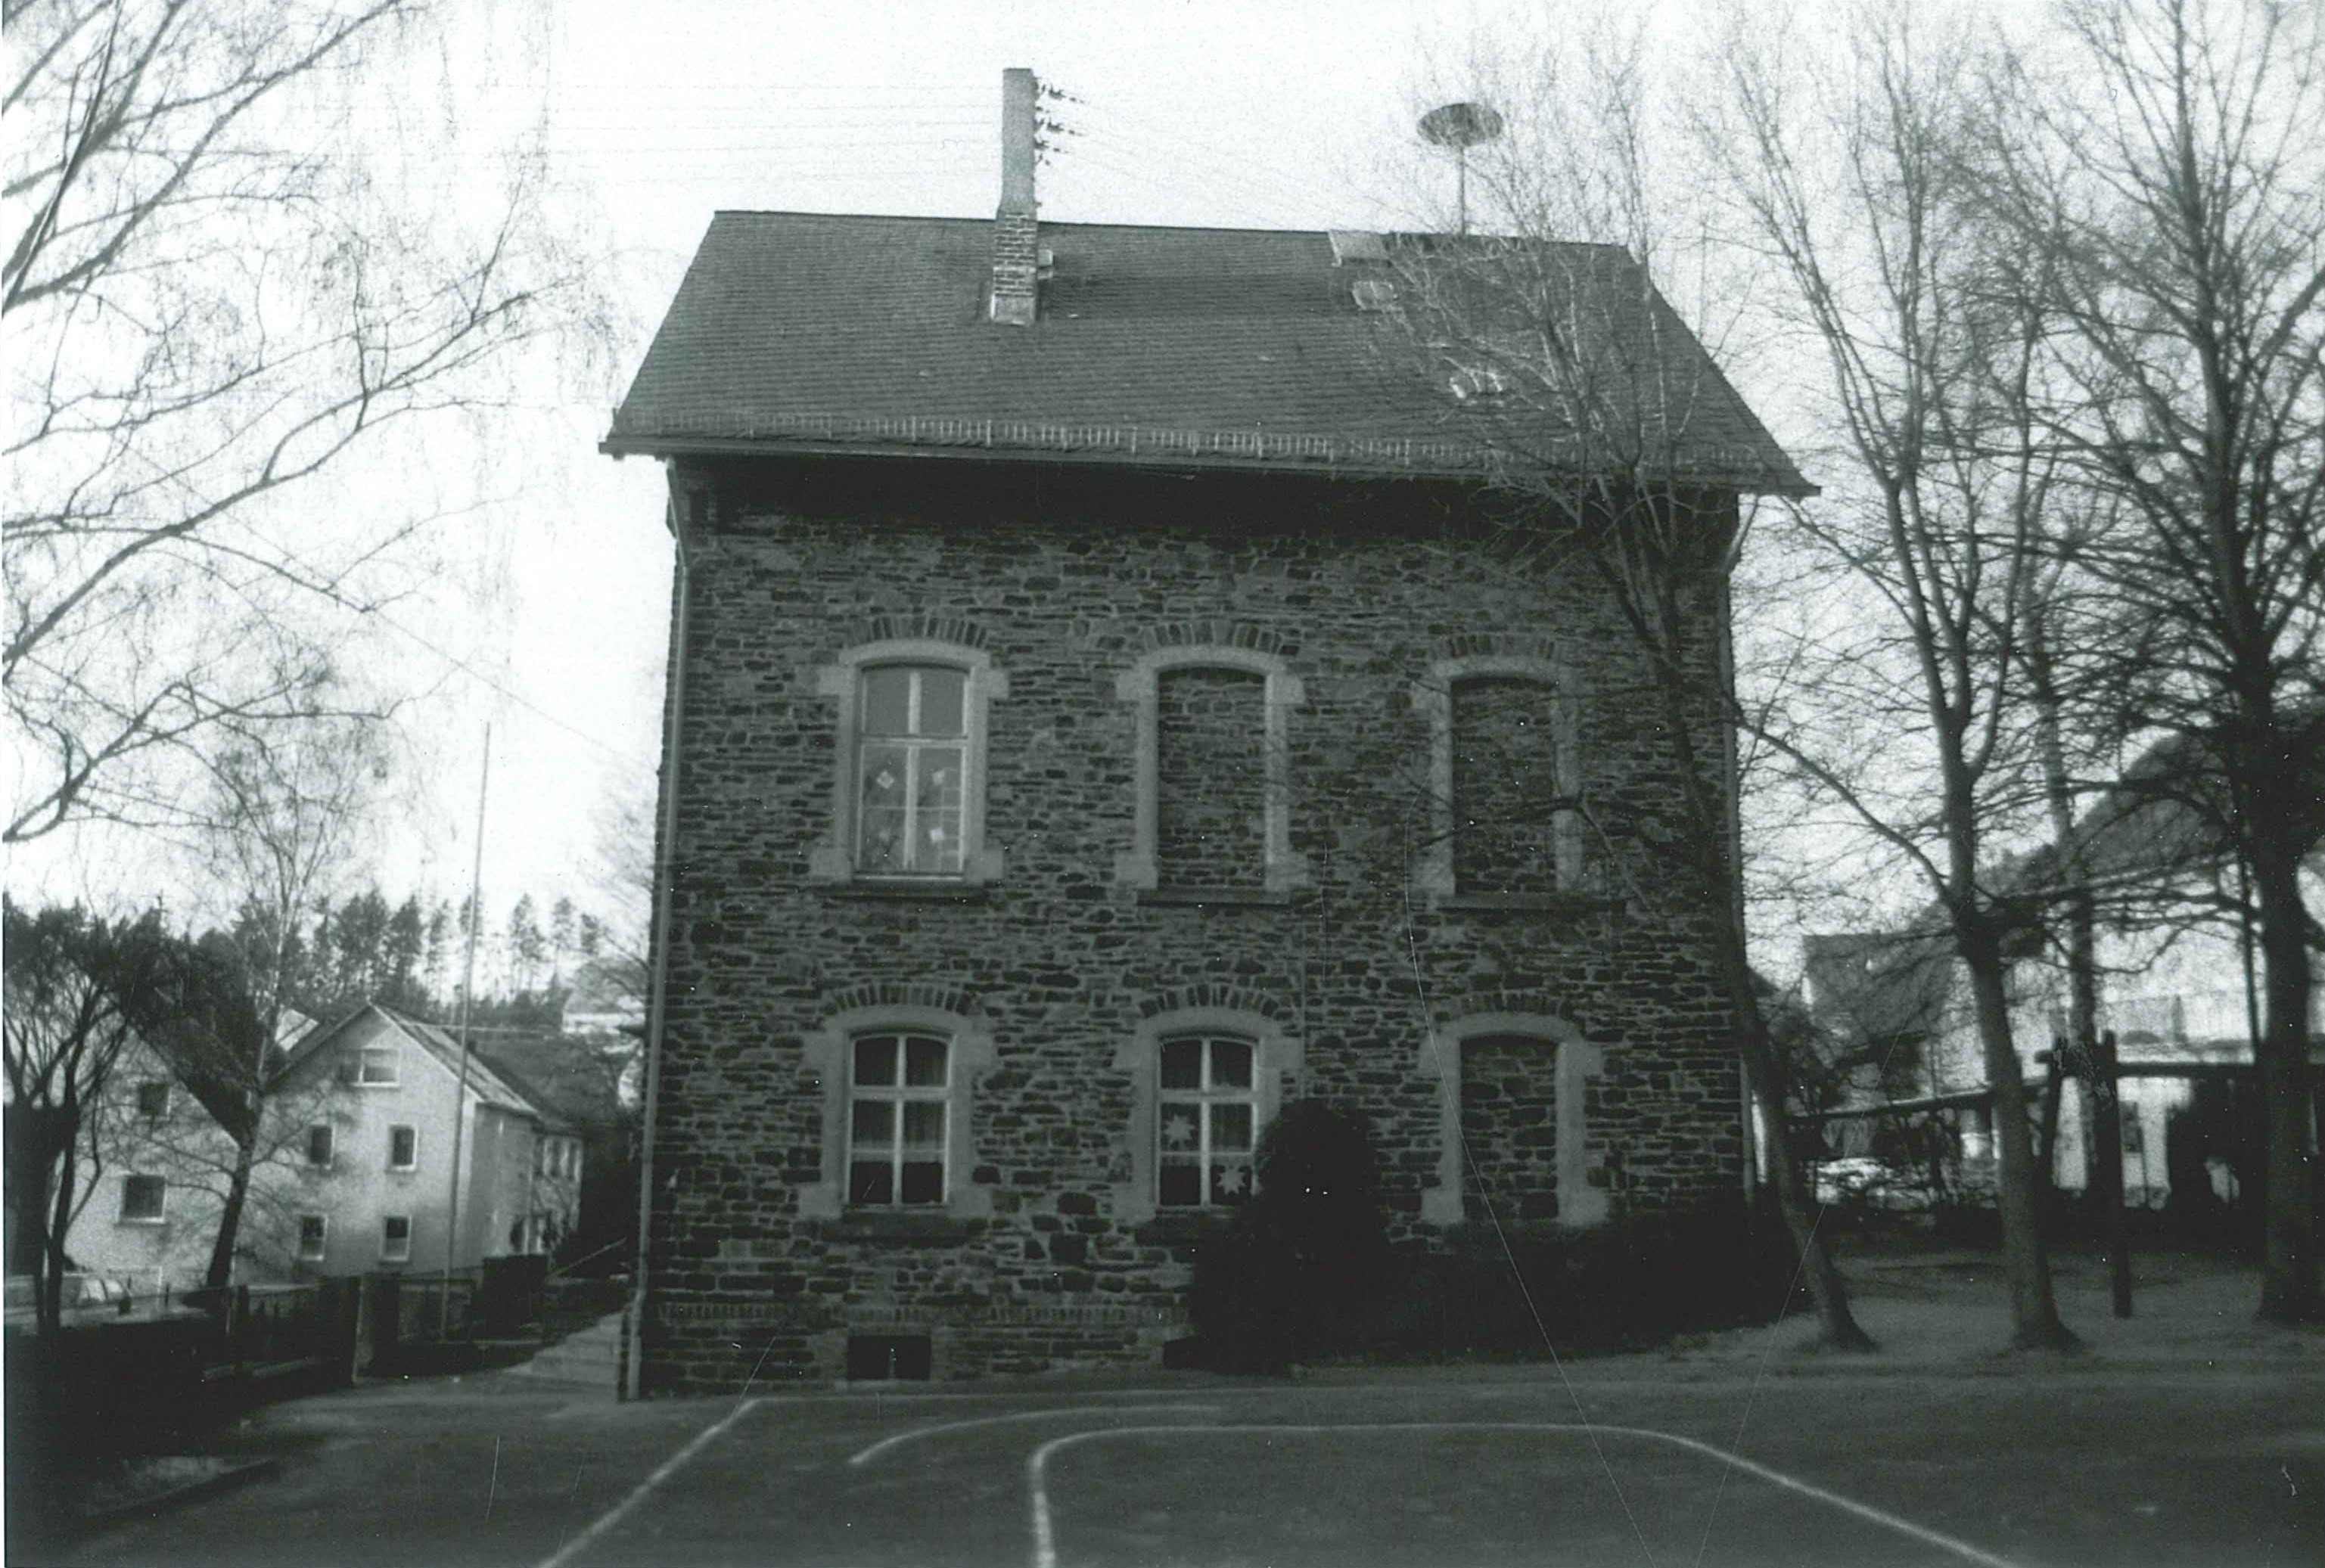 Katholische Schule "Schönblick", Altbau, Hofansicht, Bendorf-Stromberg, 1993 (REM CC BY-NC-SA)